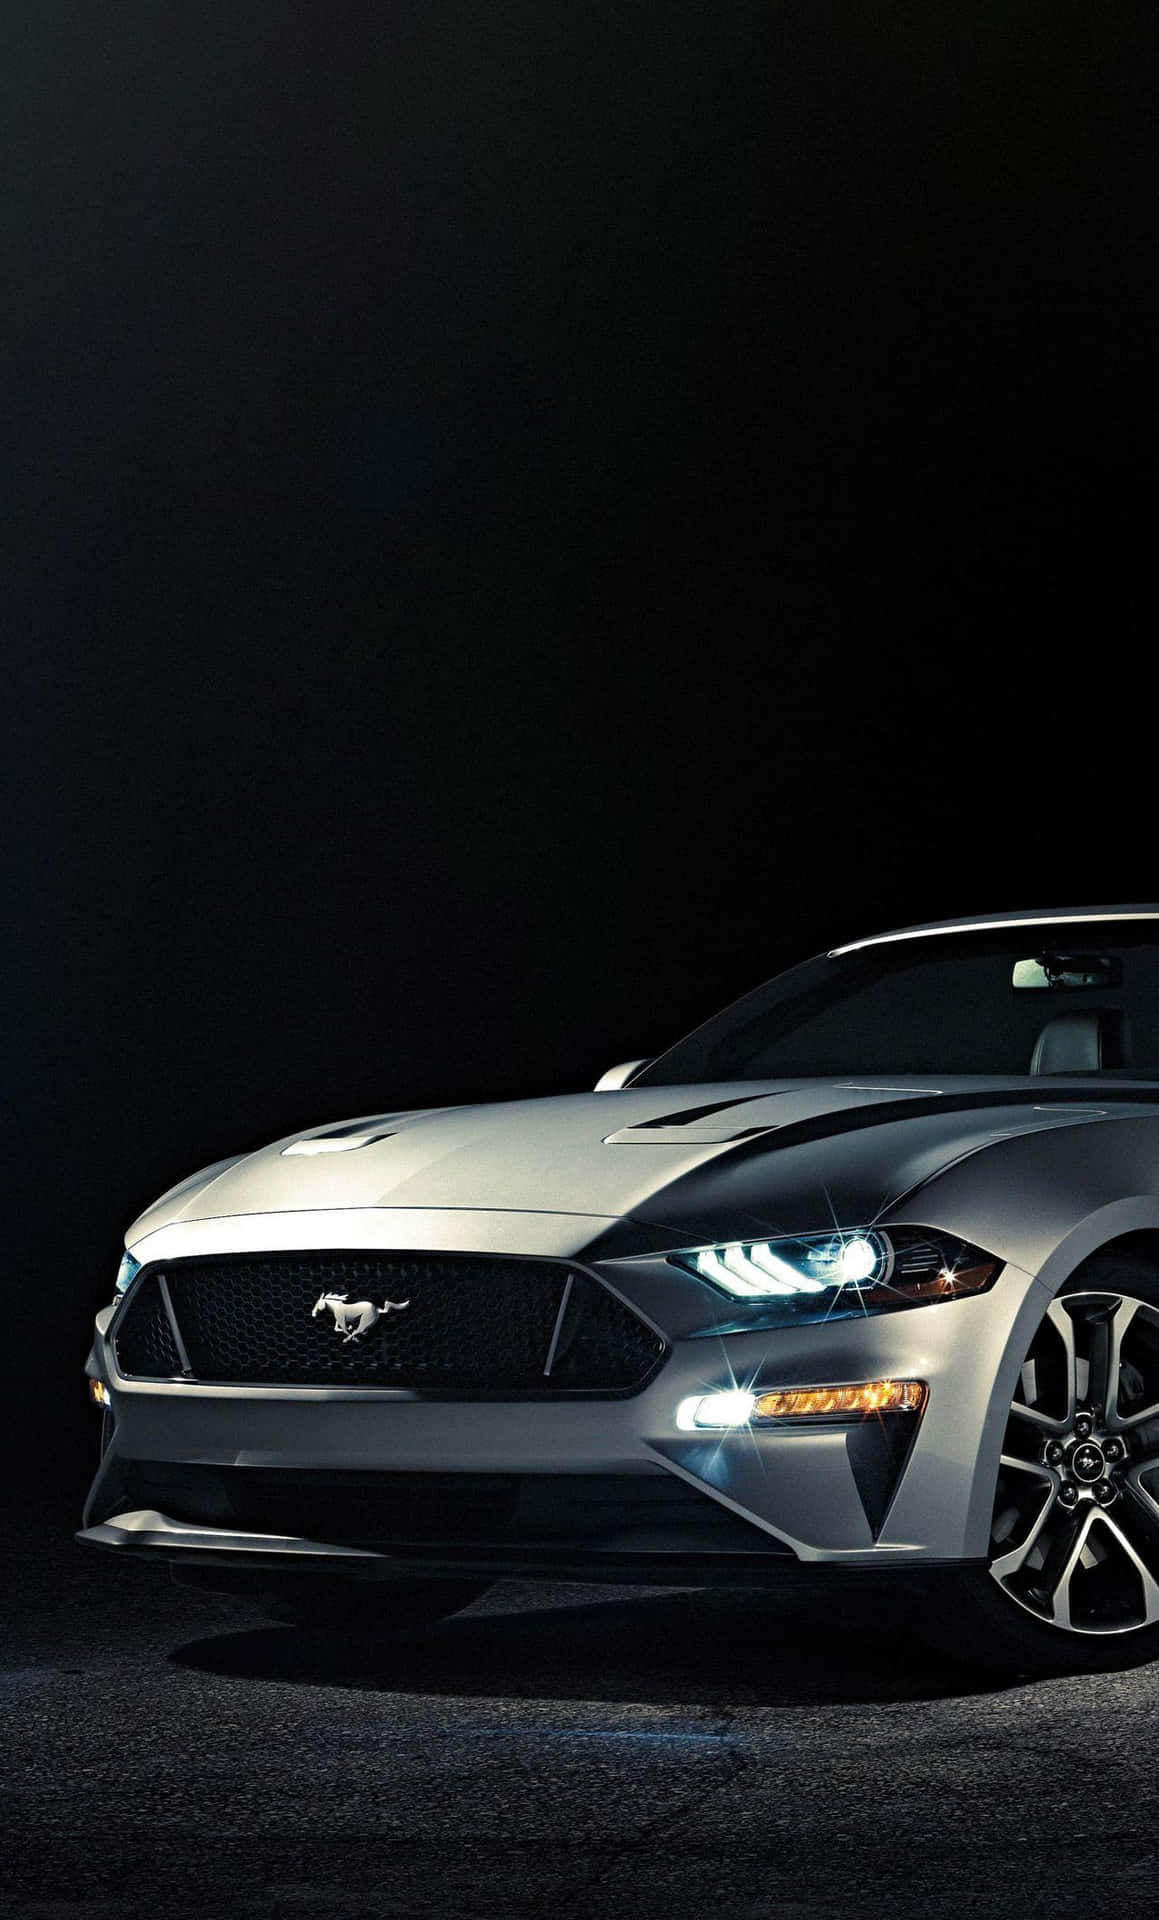 Oford Mustang 2019 É Exibido Em Um Quarto Escuro. Papel de Parede